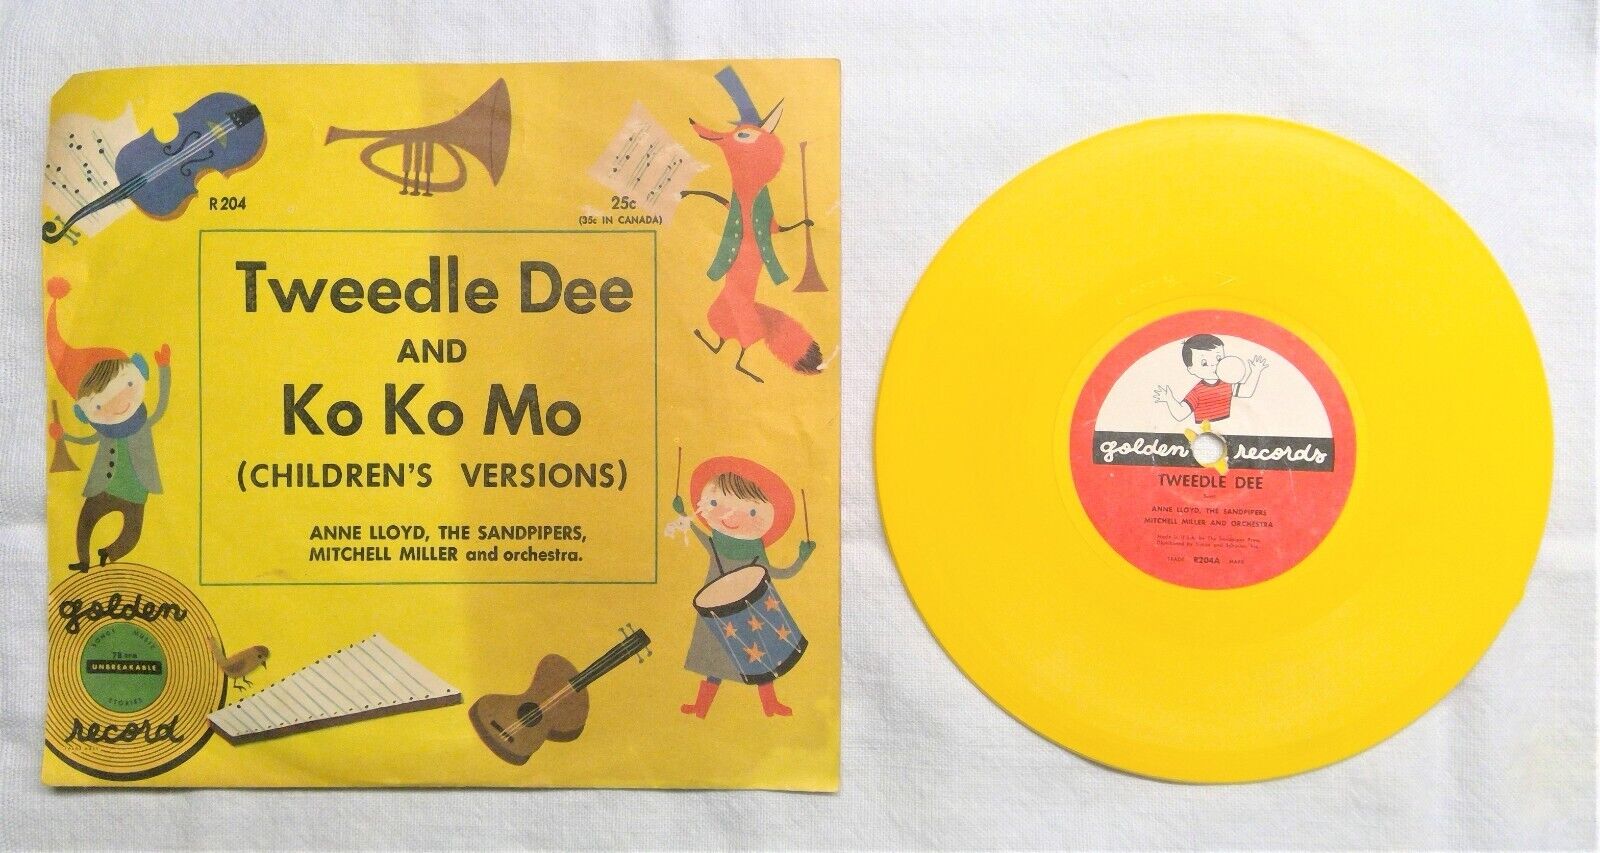 Vintage 1955 Tweedle Dee & KoKoMo Golden Record 45 Vinyl Record R204 6\